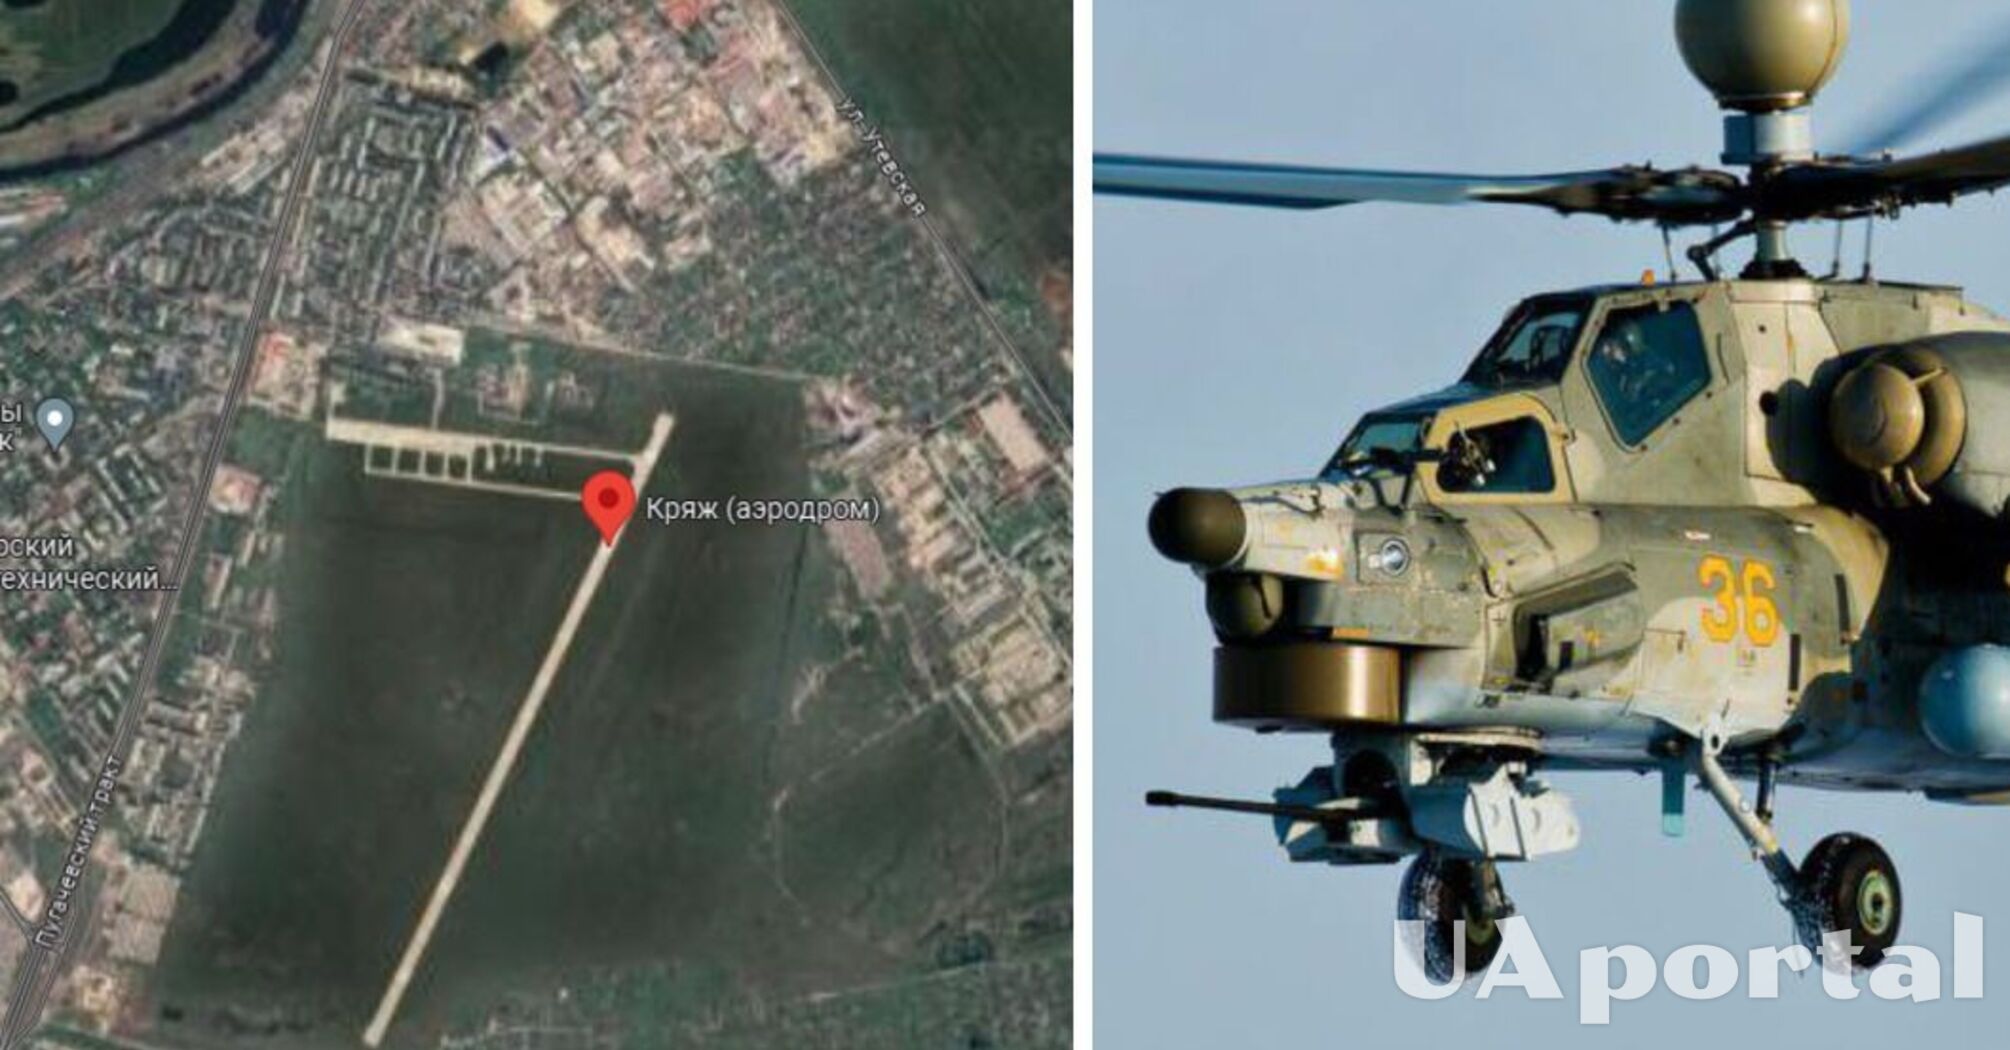 На аеродромі Кряж у Самарі дрони ГУР знищили гелікоптер Мі-8 та пошкодили ще два вертольоти ворога